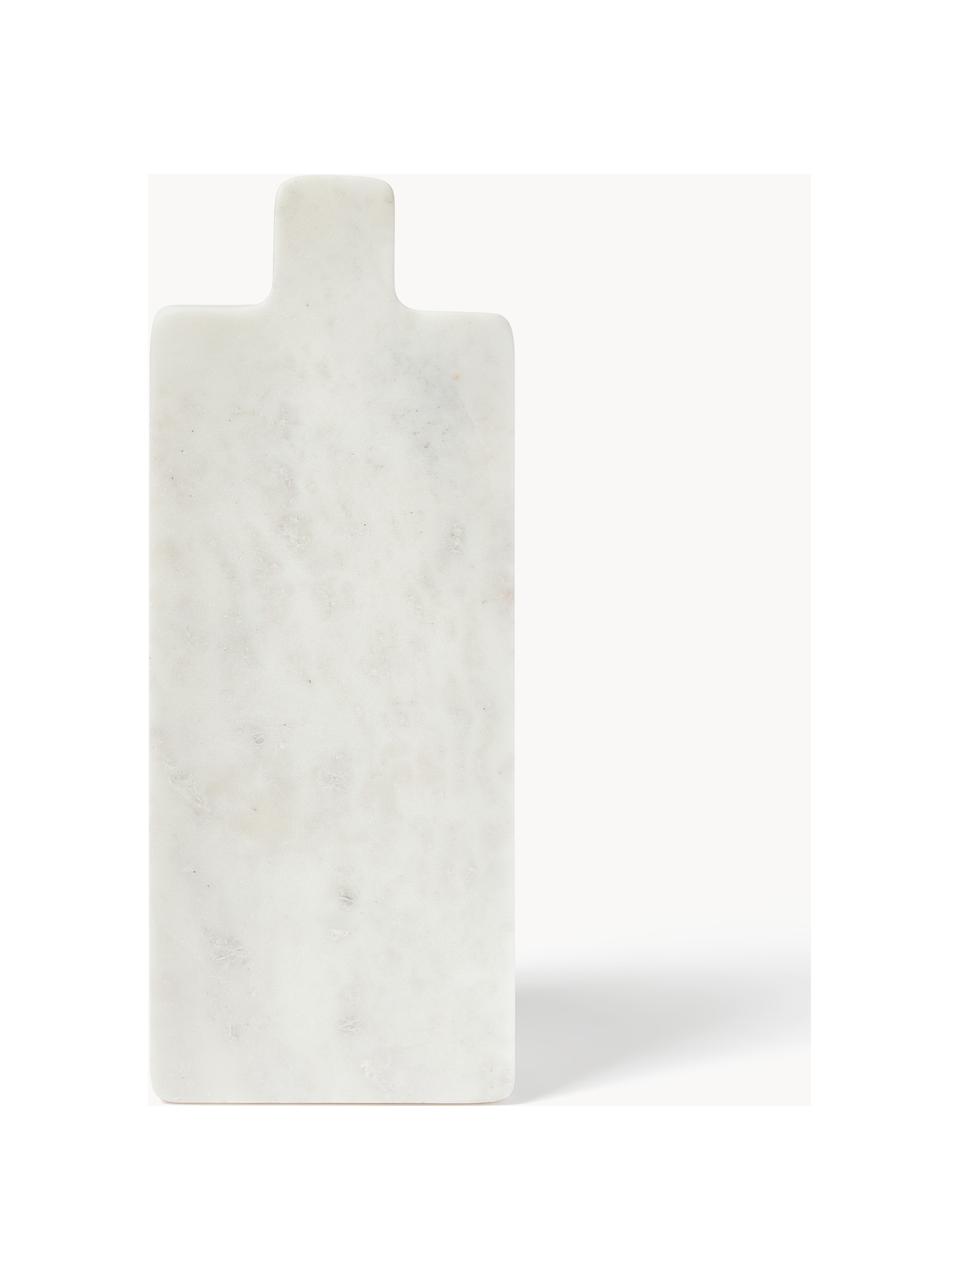 Tagliere in marmo Agata, Marmo, Bianco marmorizzato, Larg. 38 x Prof. 15 cm